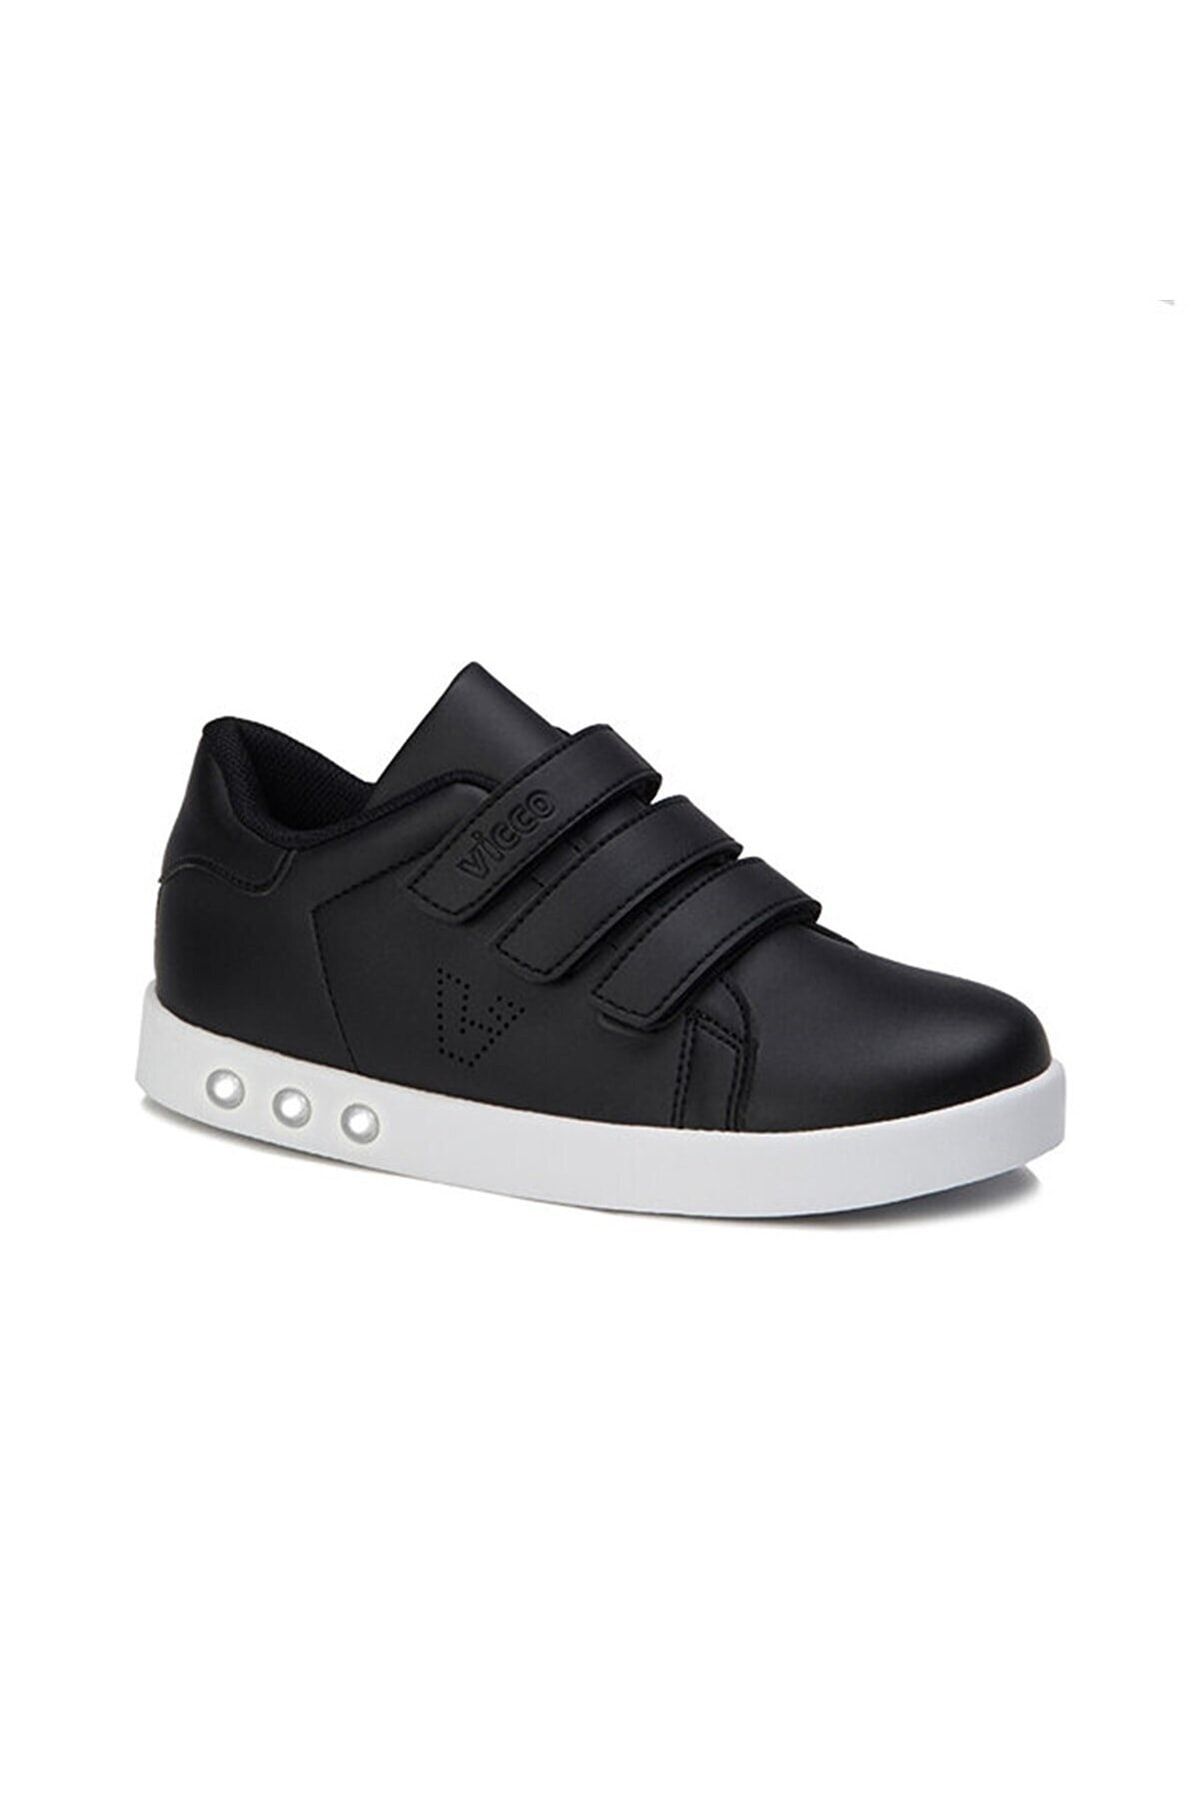 Vicco Oyo Işıklı Unisex Çocuk Siyah/beyaz Sneaker